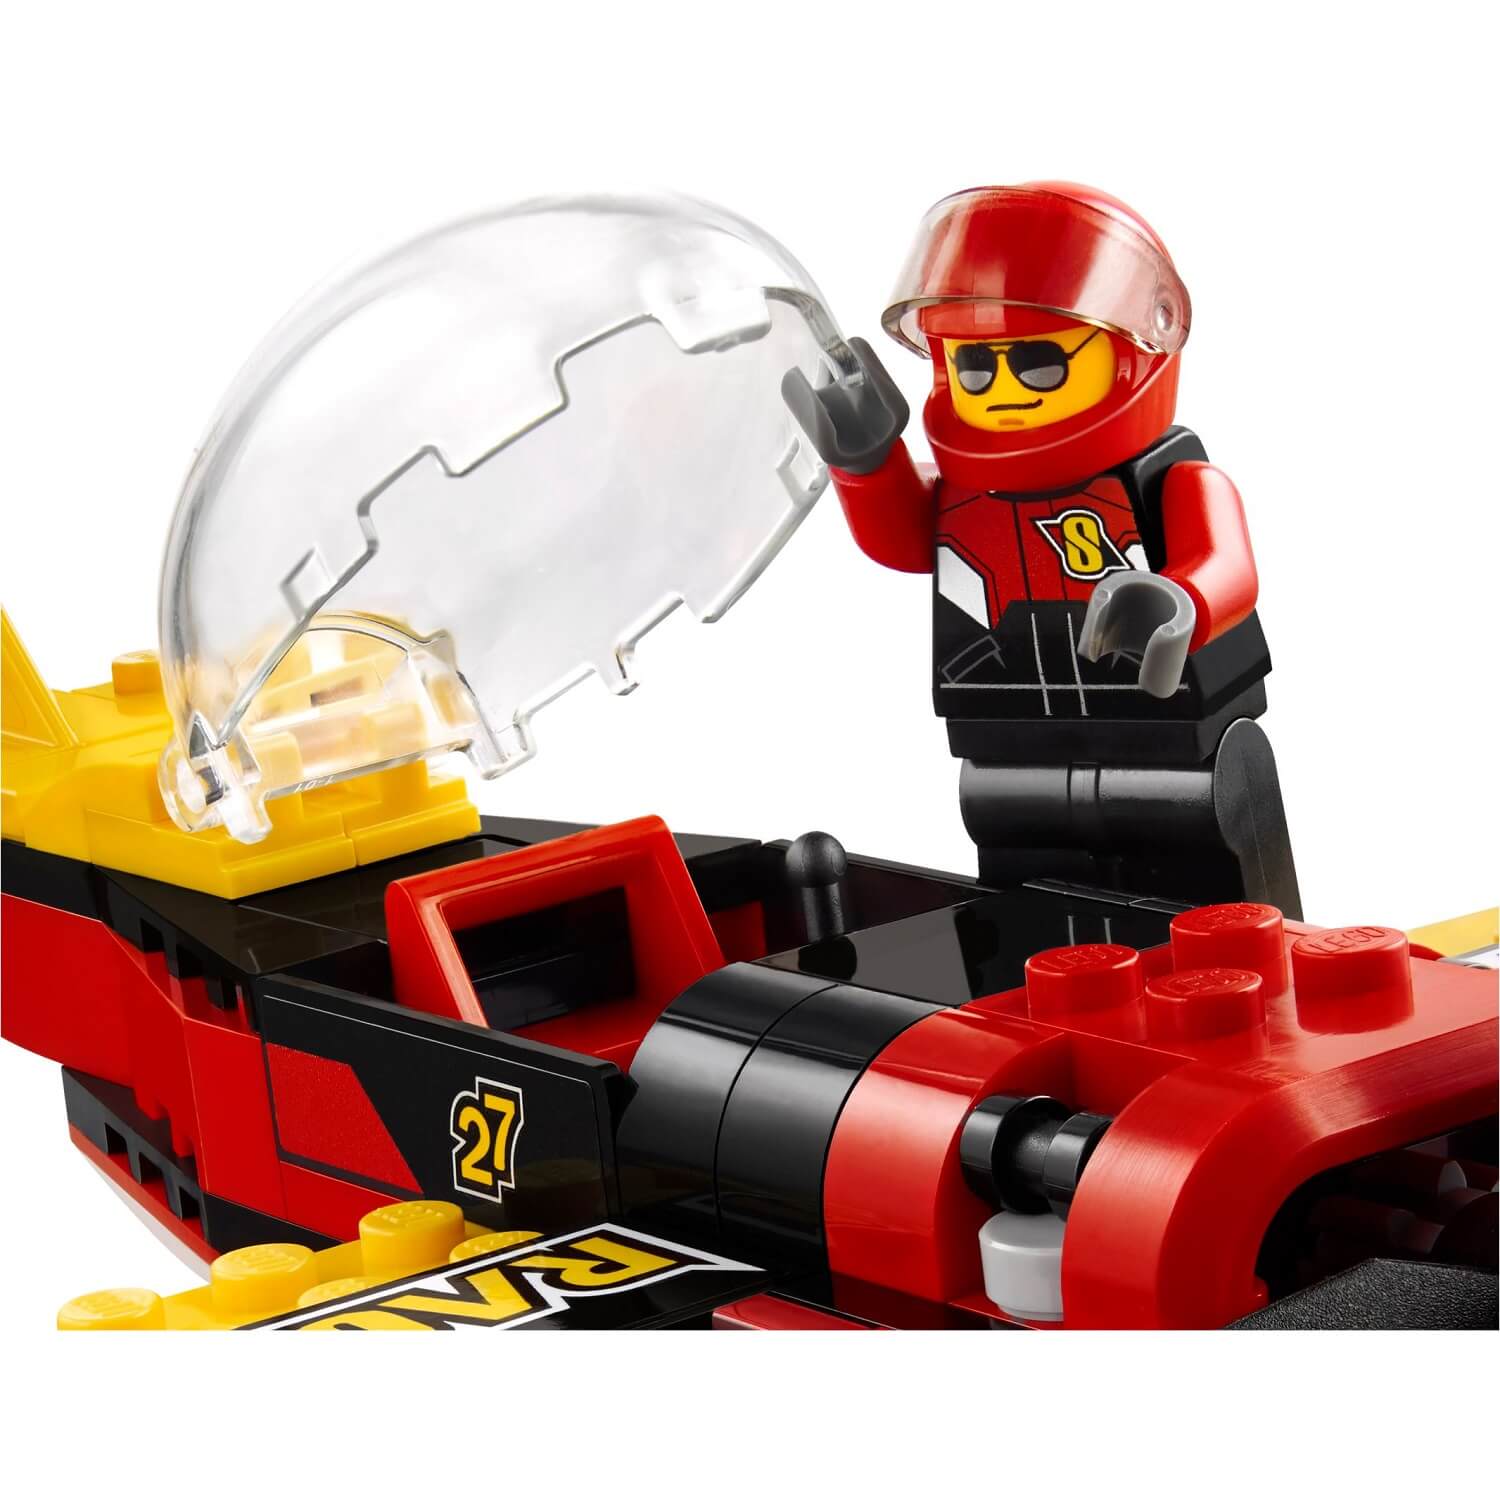 Avión carreras ( Lego 60144 ) imagen c